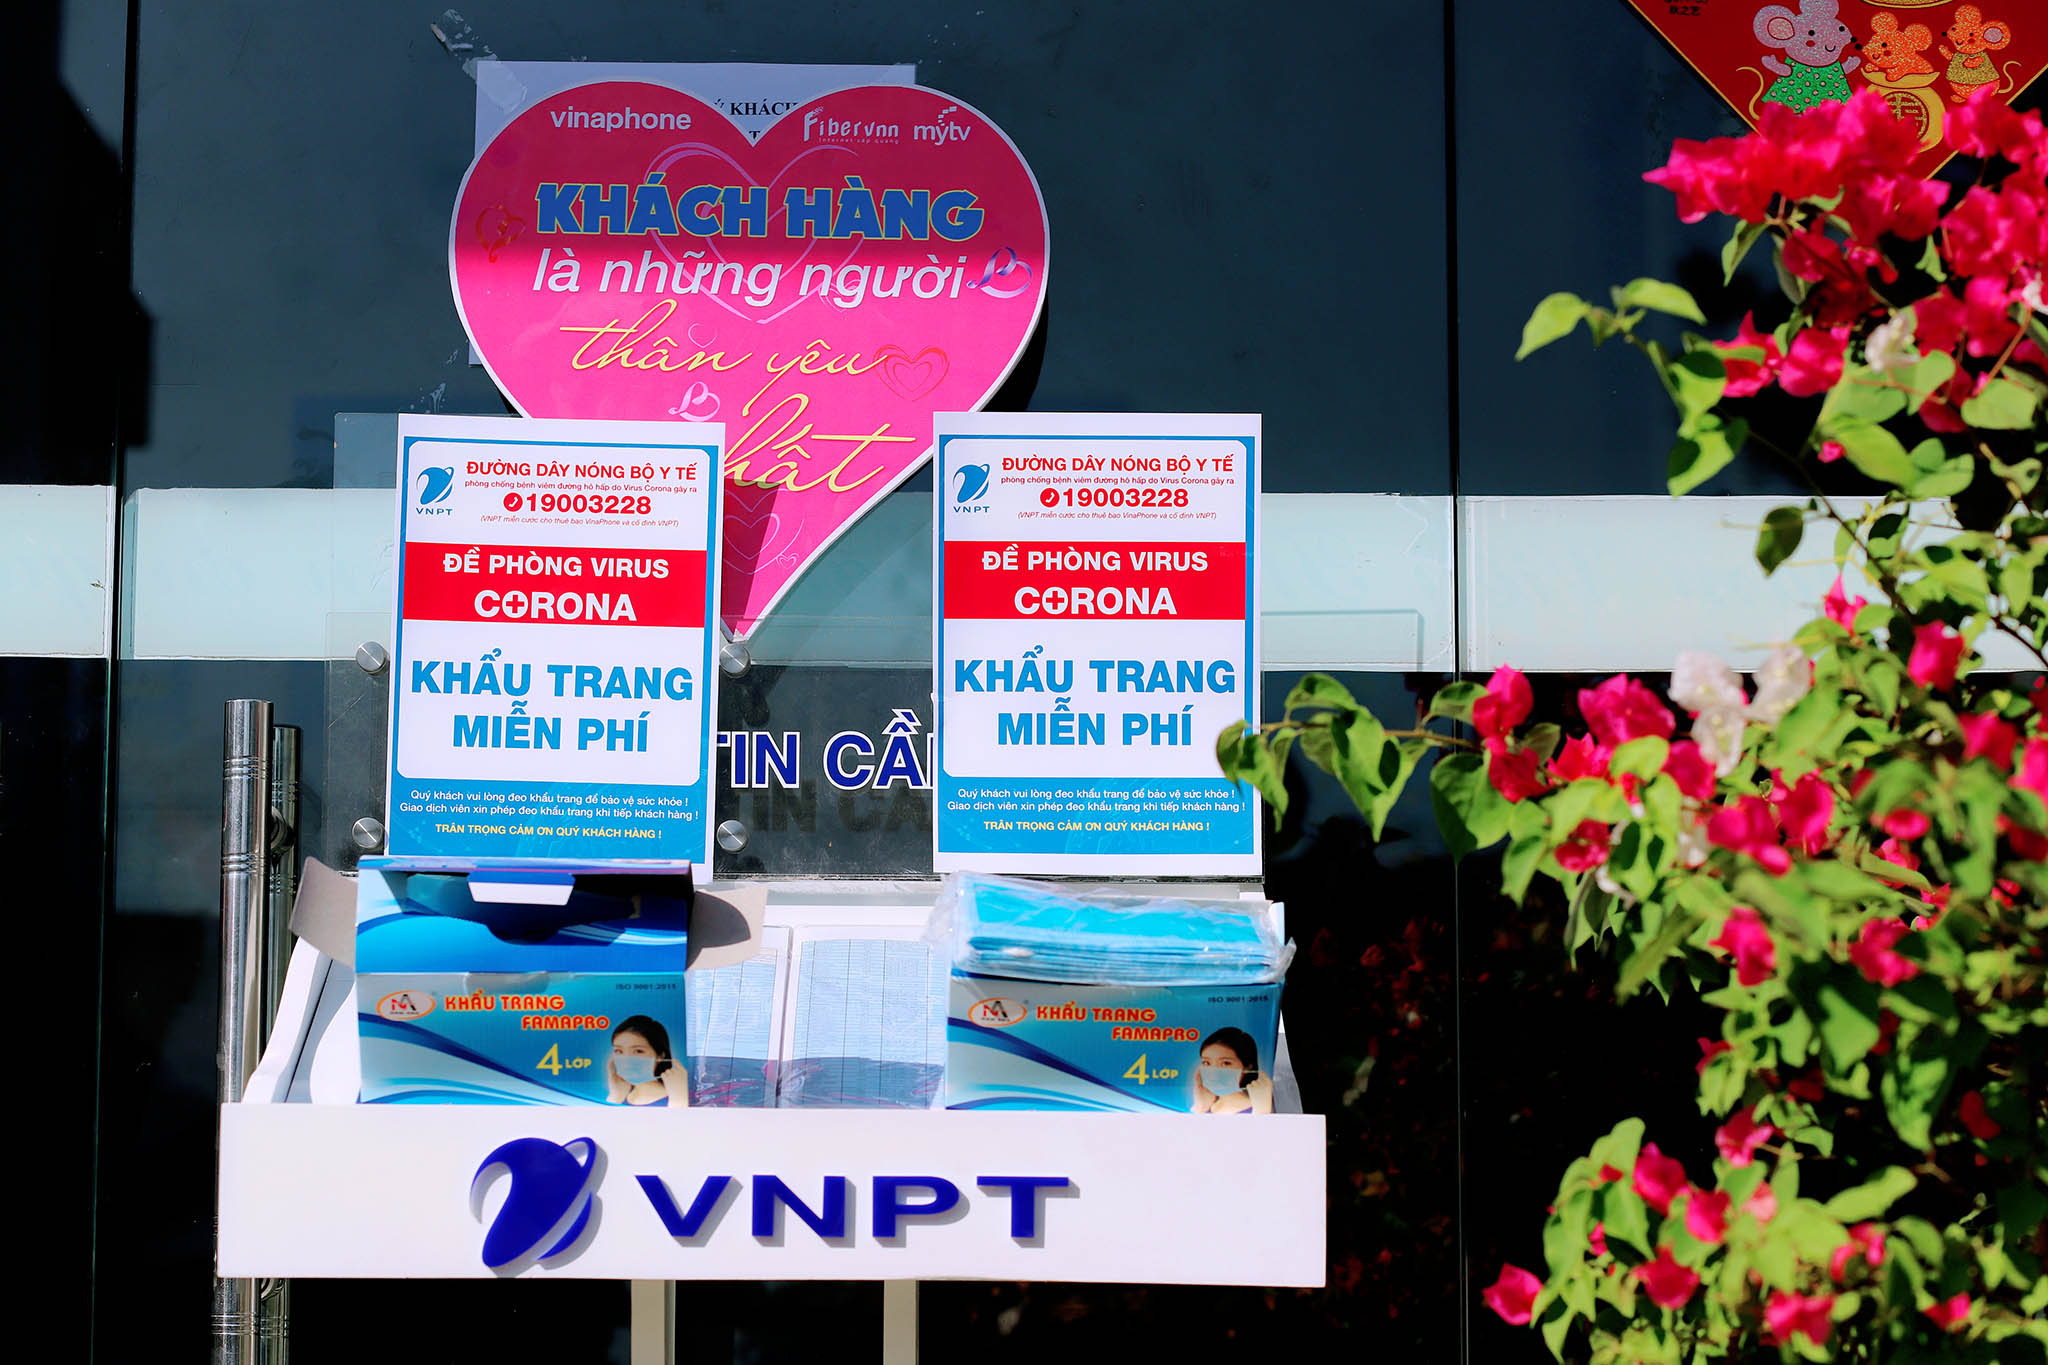 VNPT phát khẩu trang miễn phí cho khách đến điểm giao dịch